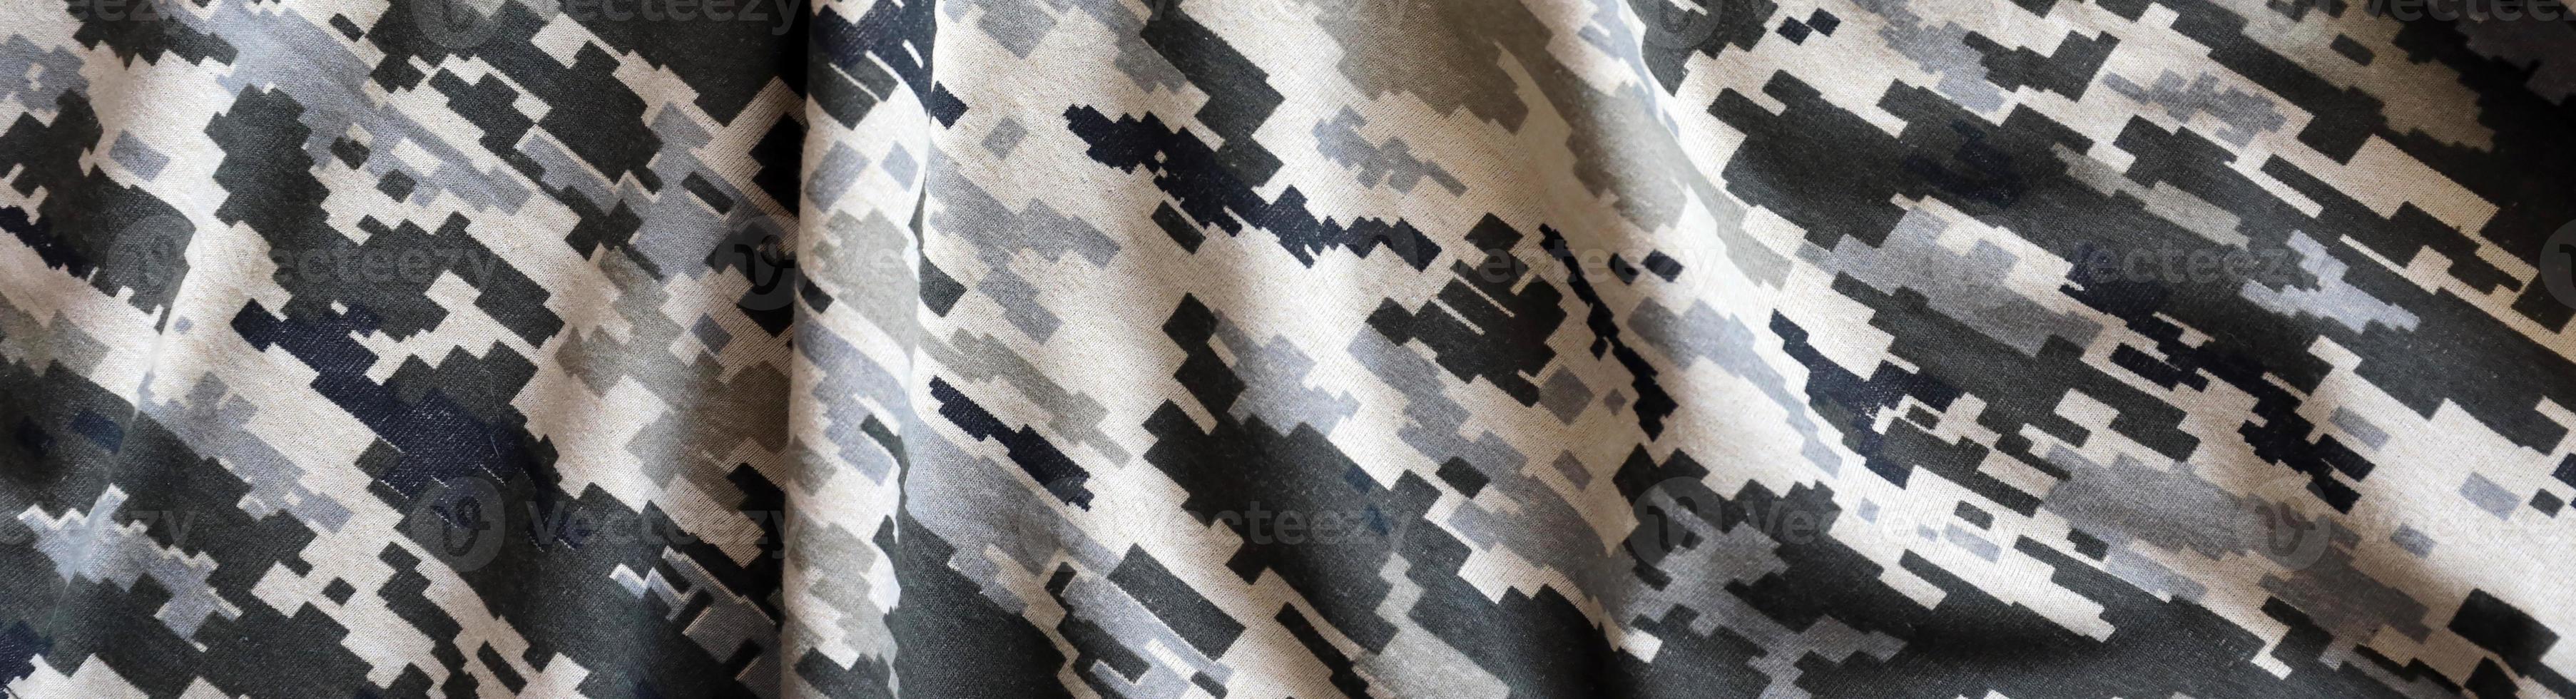 tela con textura de camuflaje pixelado militar ucraniano. tela con patrón de camuflaje en formas de píxeles grises, marrones y verdes. uniforme oficial de los soldados ucranianos foto